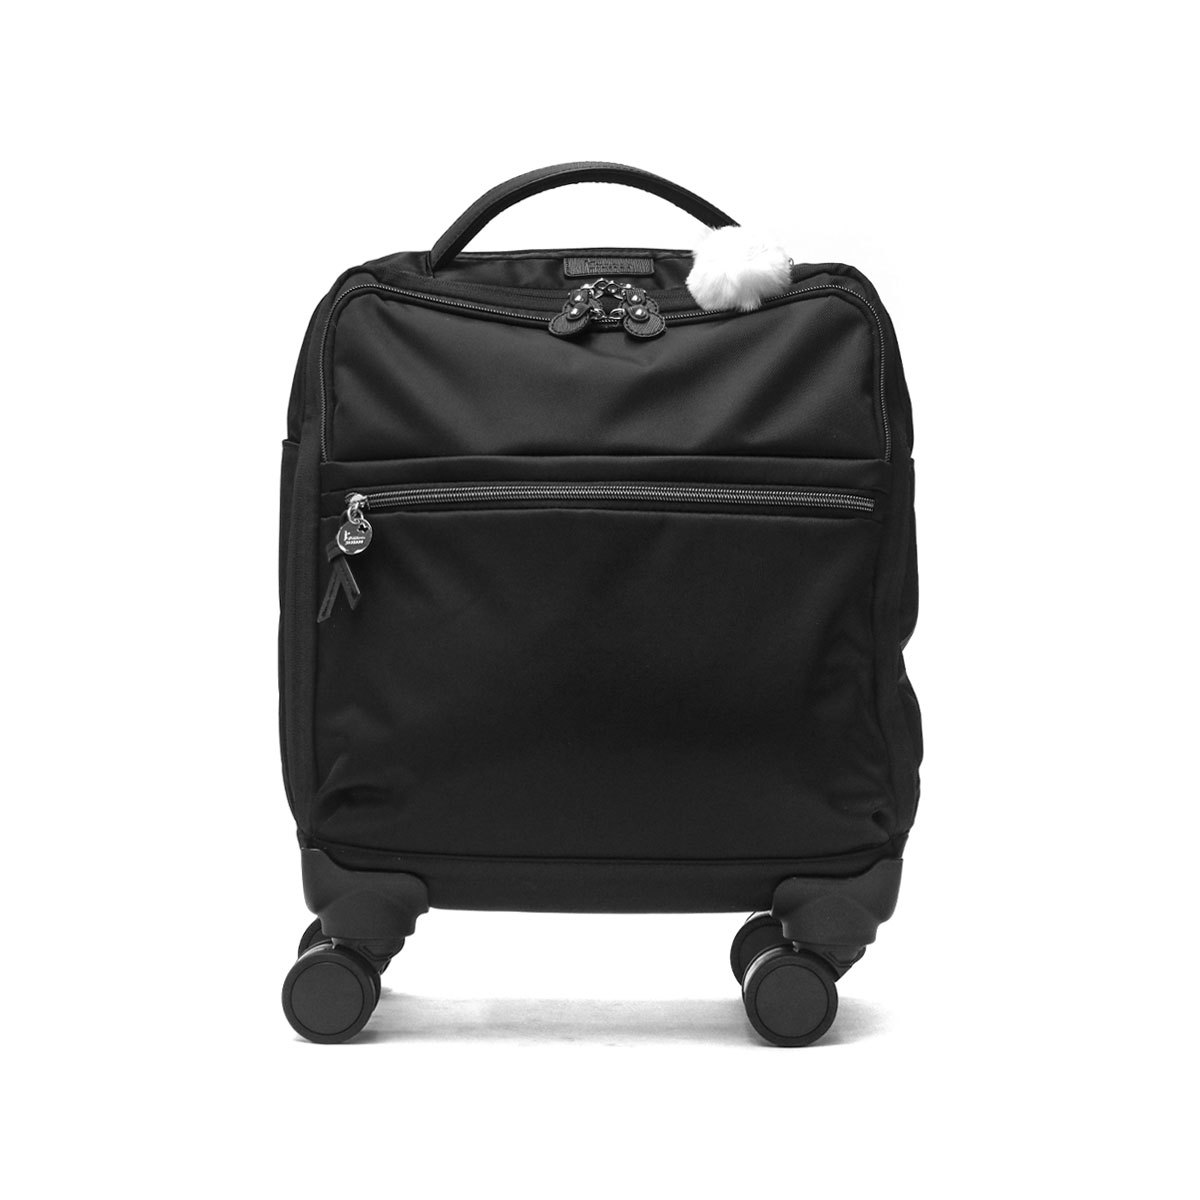 カナナプロジェクト スーツケース Kanana project トローリーバッグ 機内持ち込み Sサイズ ソフト マイトローリー PJ10-3rd  18L 35511